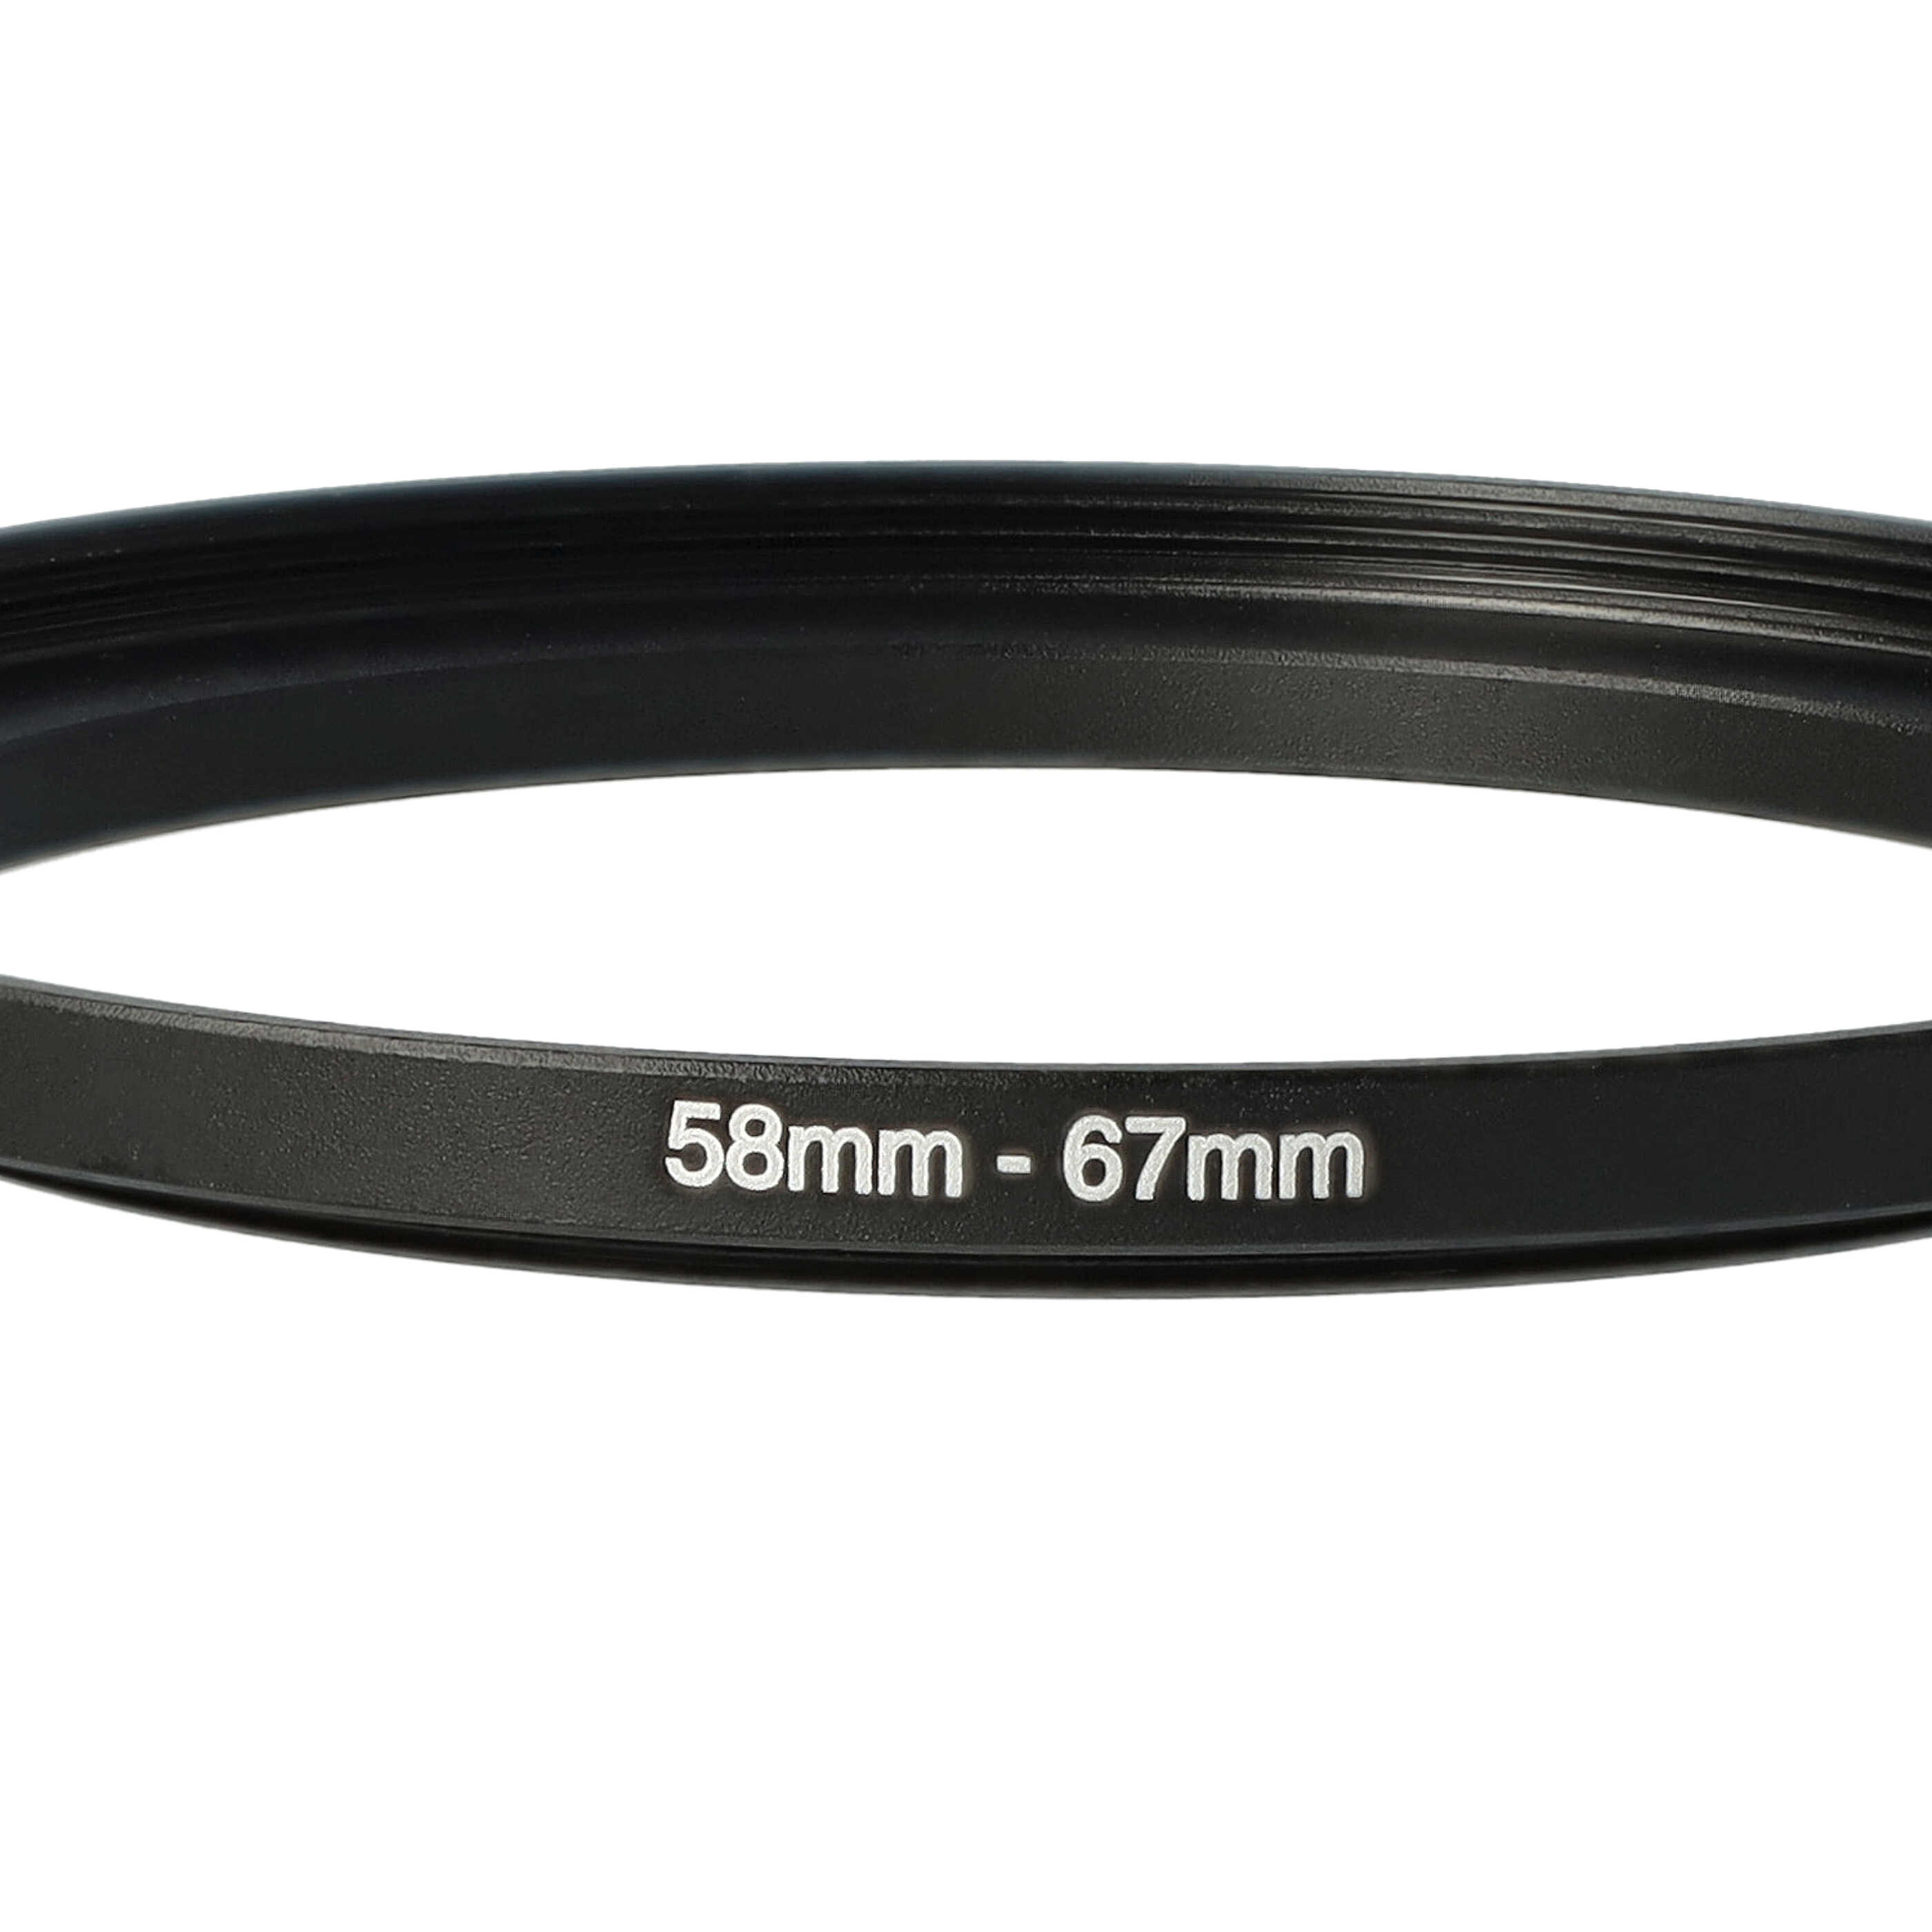 Step-Up-Ring Adapter 58 mm auf 67 mm passend für diverse Kamera-Objektive - Filteradapter